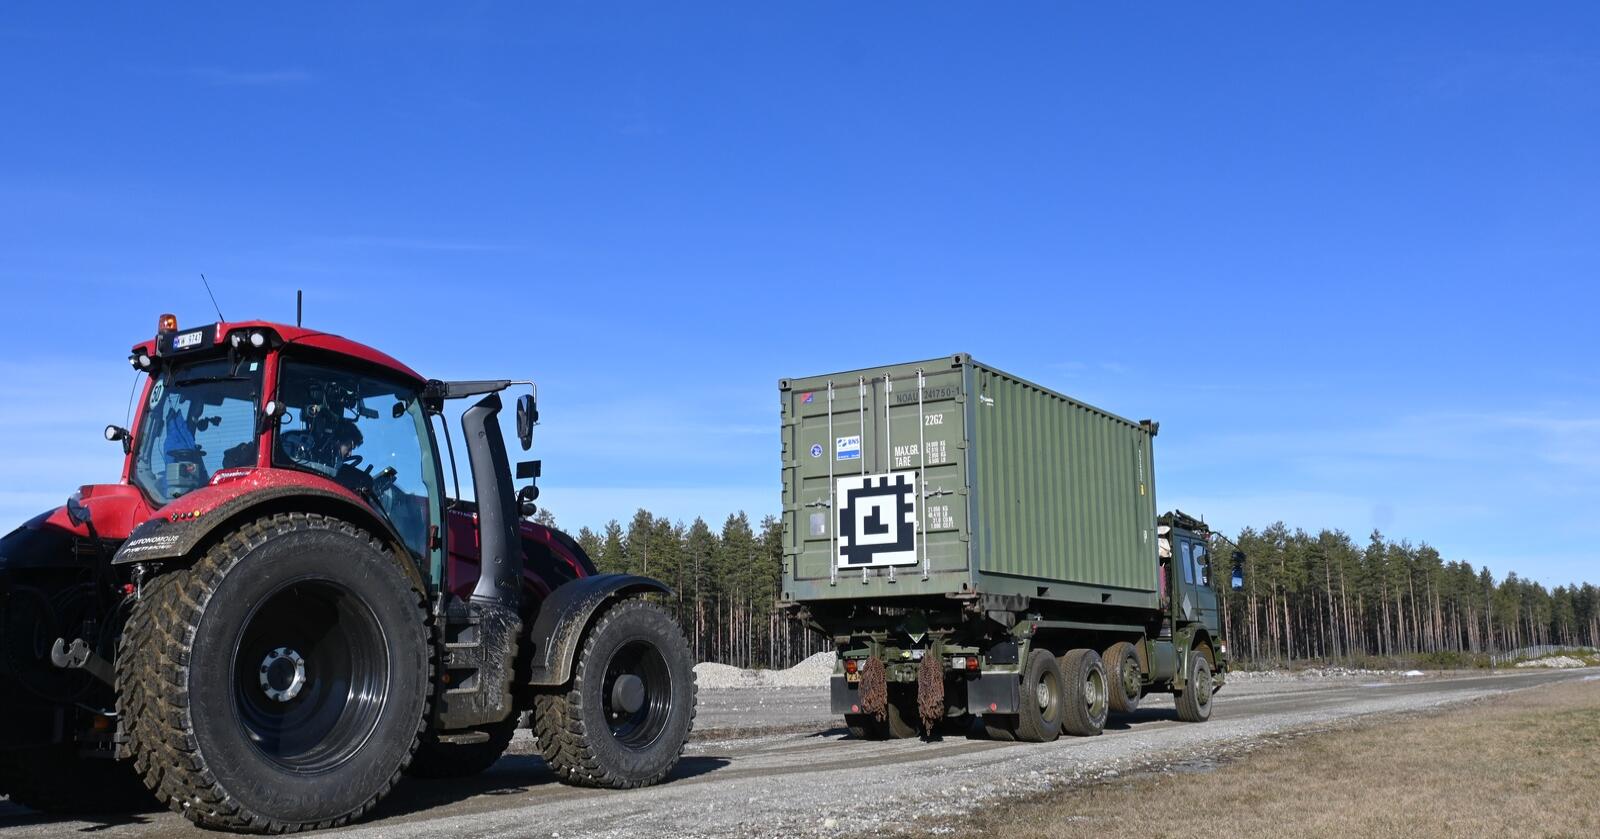 Valtra: Forsvaret har signert en avtale med Valtra, som betyr at de skal kjøpe Valtra-traktorer til vedlikeholdsoppgaver de neste to årene. 